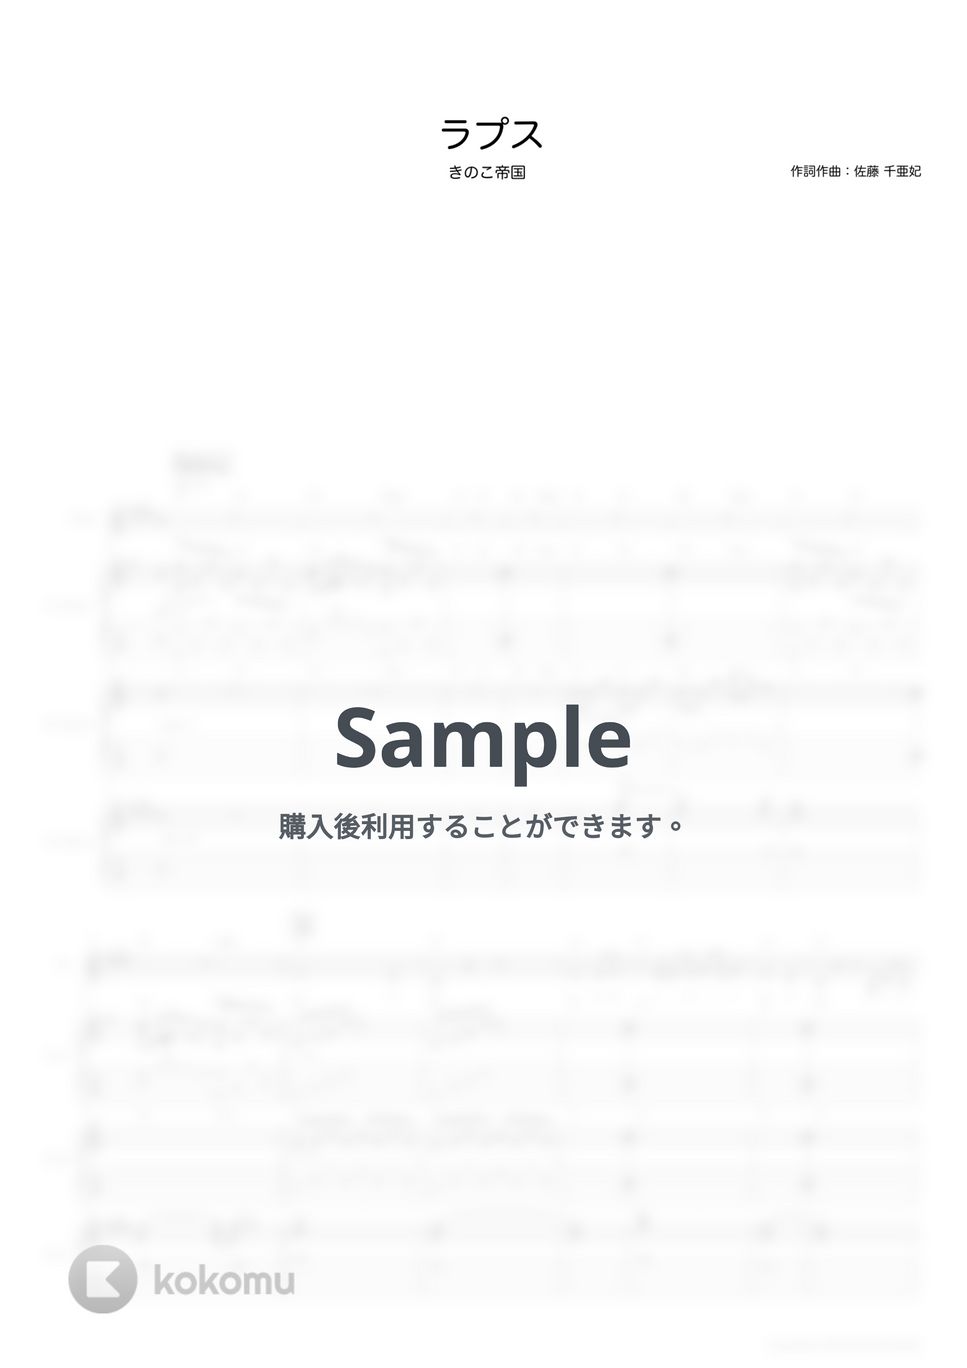 きのこ帝国 - ラプス (ギタースコア・歌詞・コード付き) by TRIAD GUITAR SCHOOL